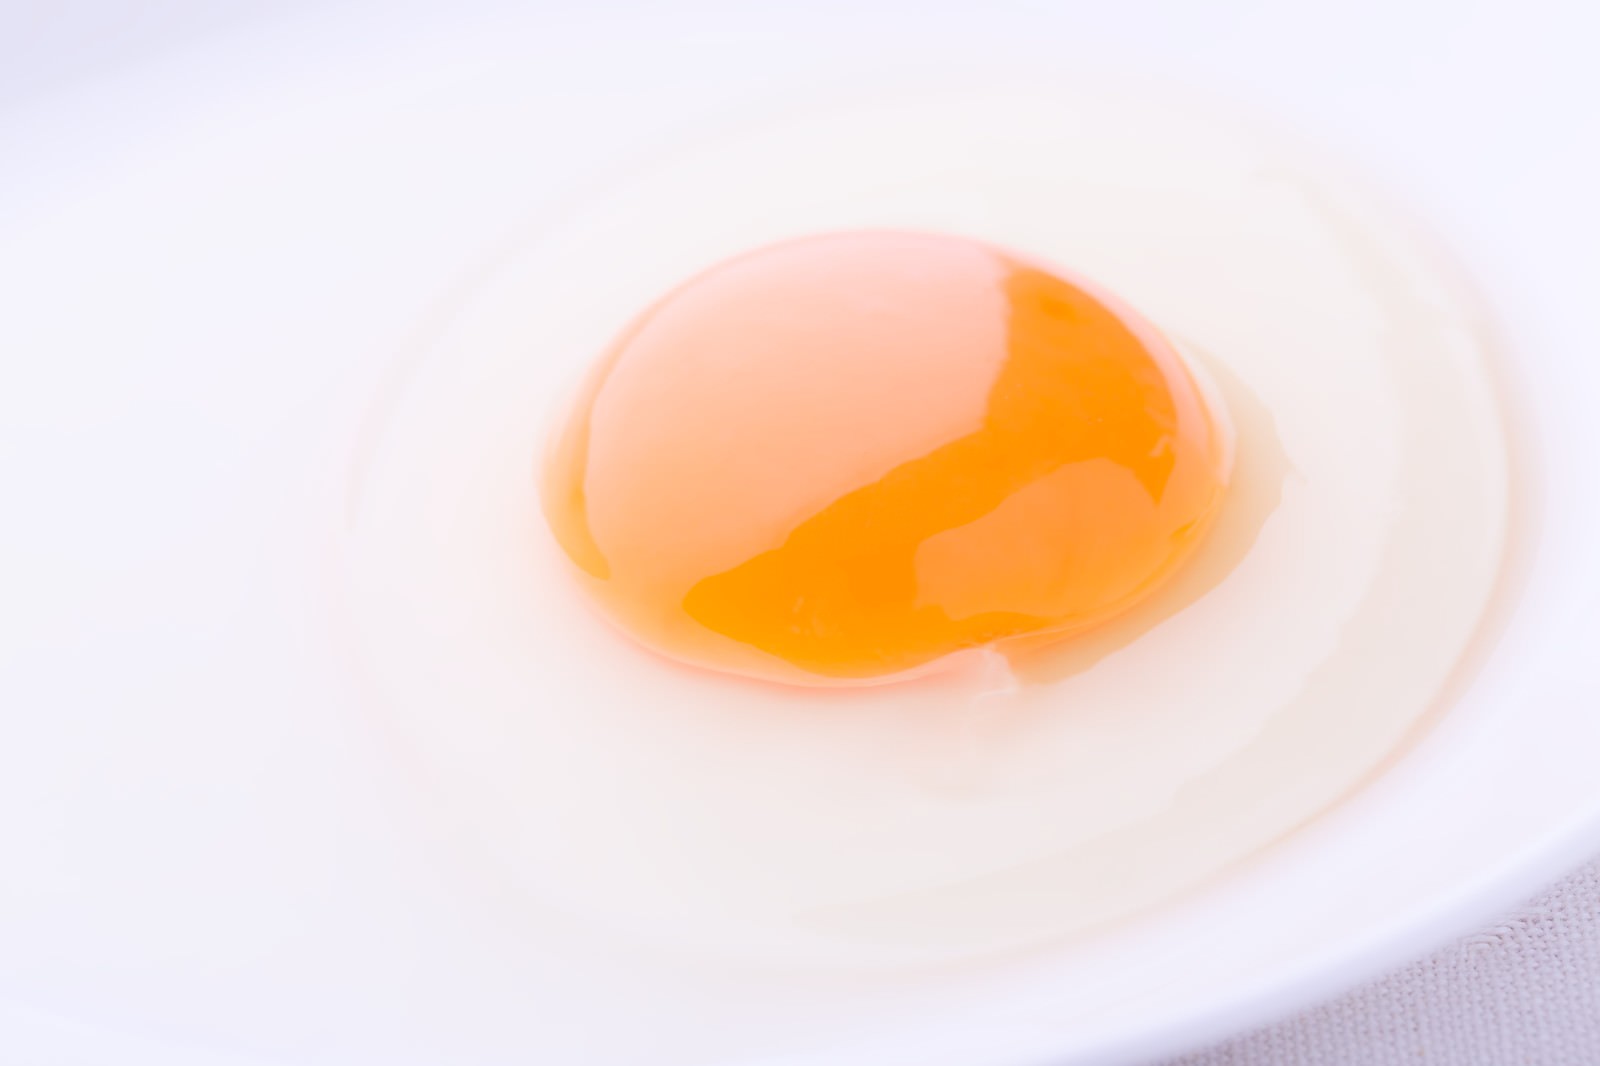 「割ったばかりの卵 | フリー素材のぱくたそ」の写真